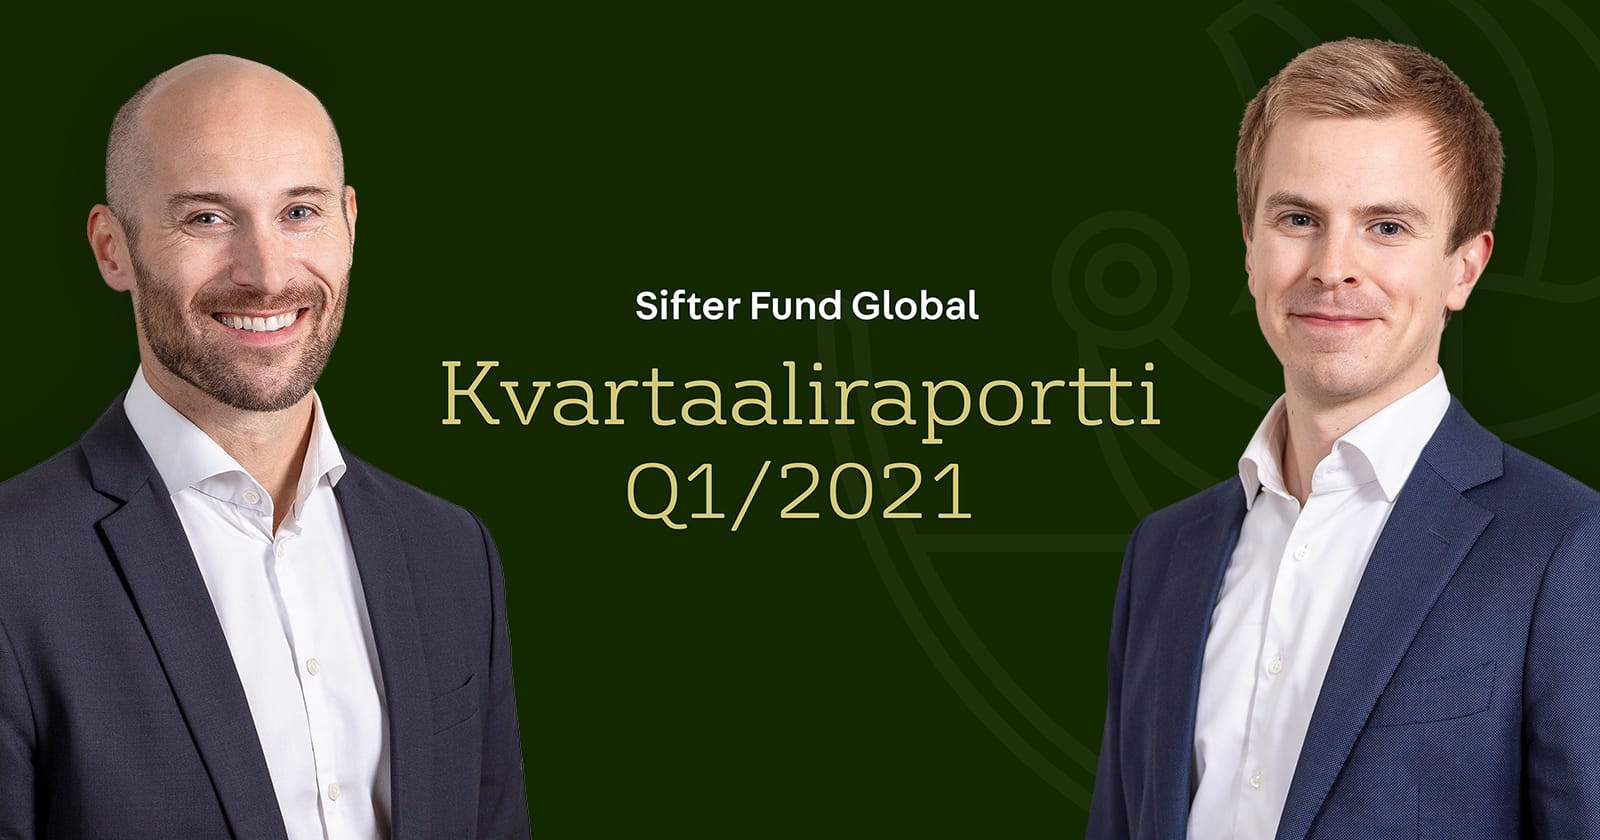 Sifter Fund Global Kvartaaliraportti Q1/2021